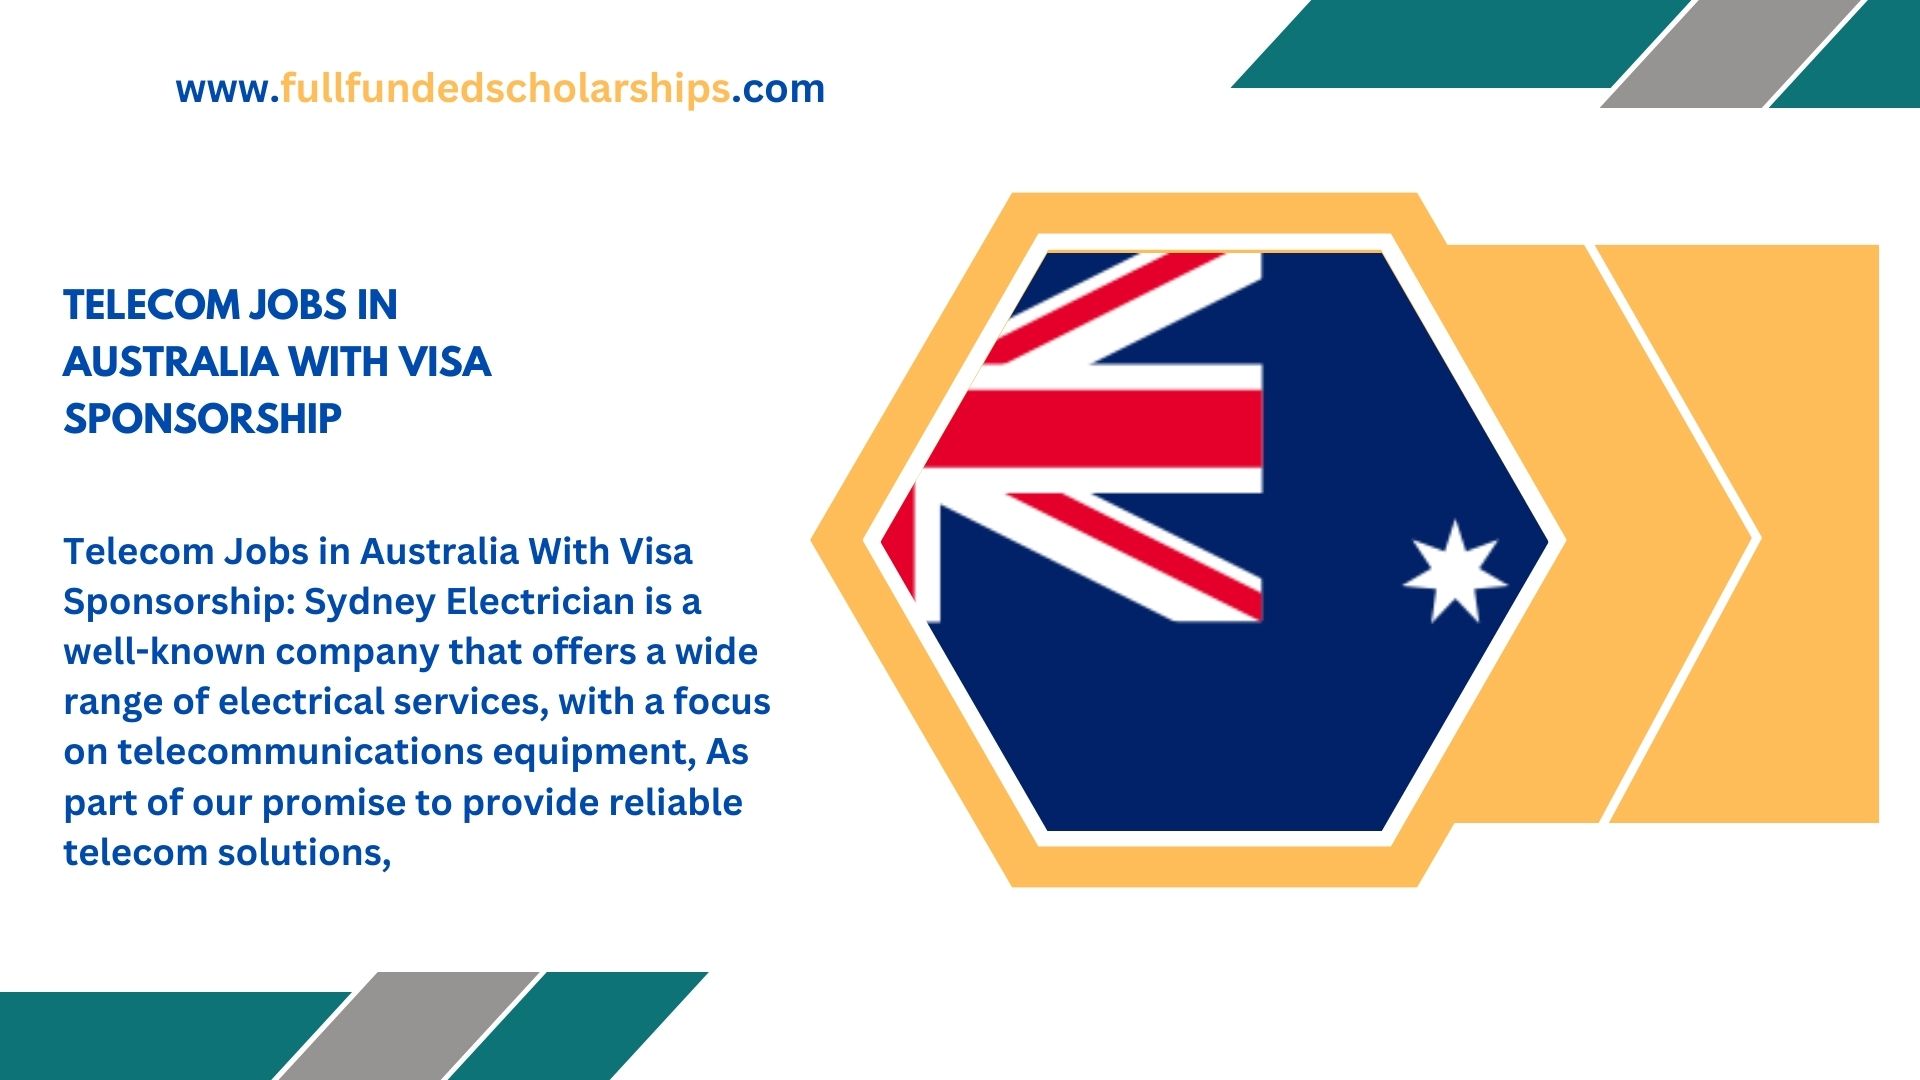 Telecom Jobs in Australia With Visa Sponsorship